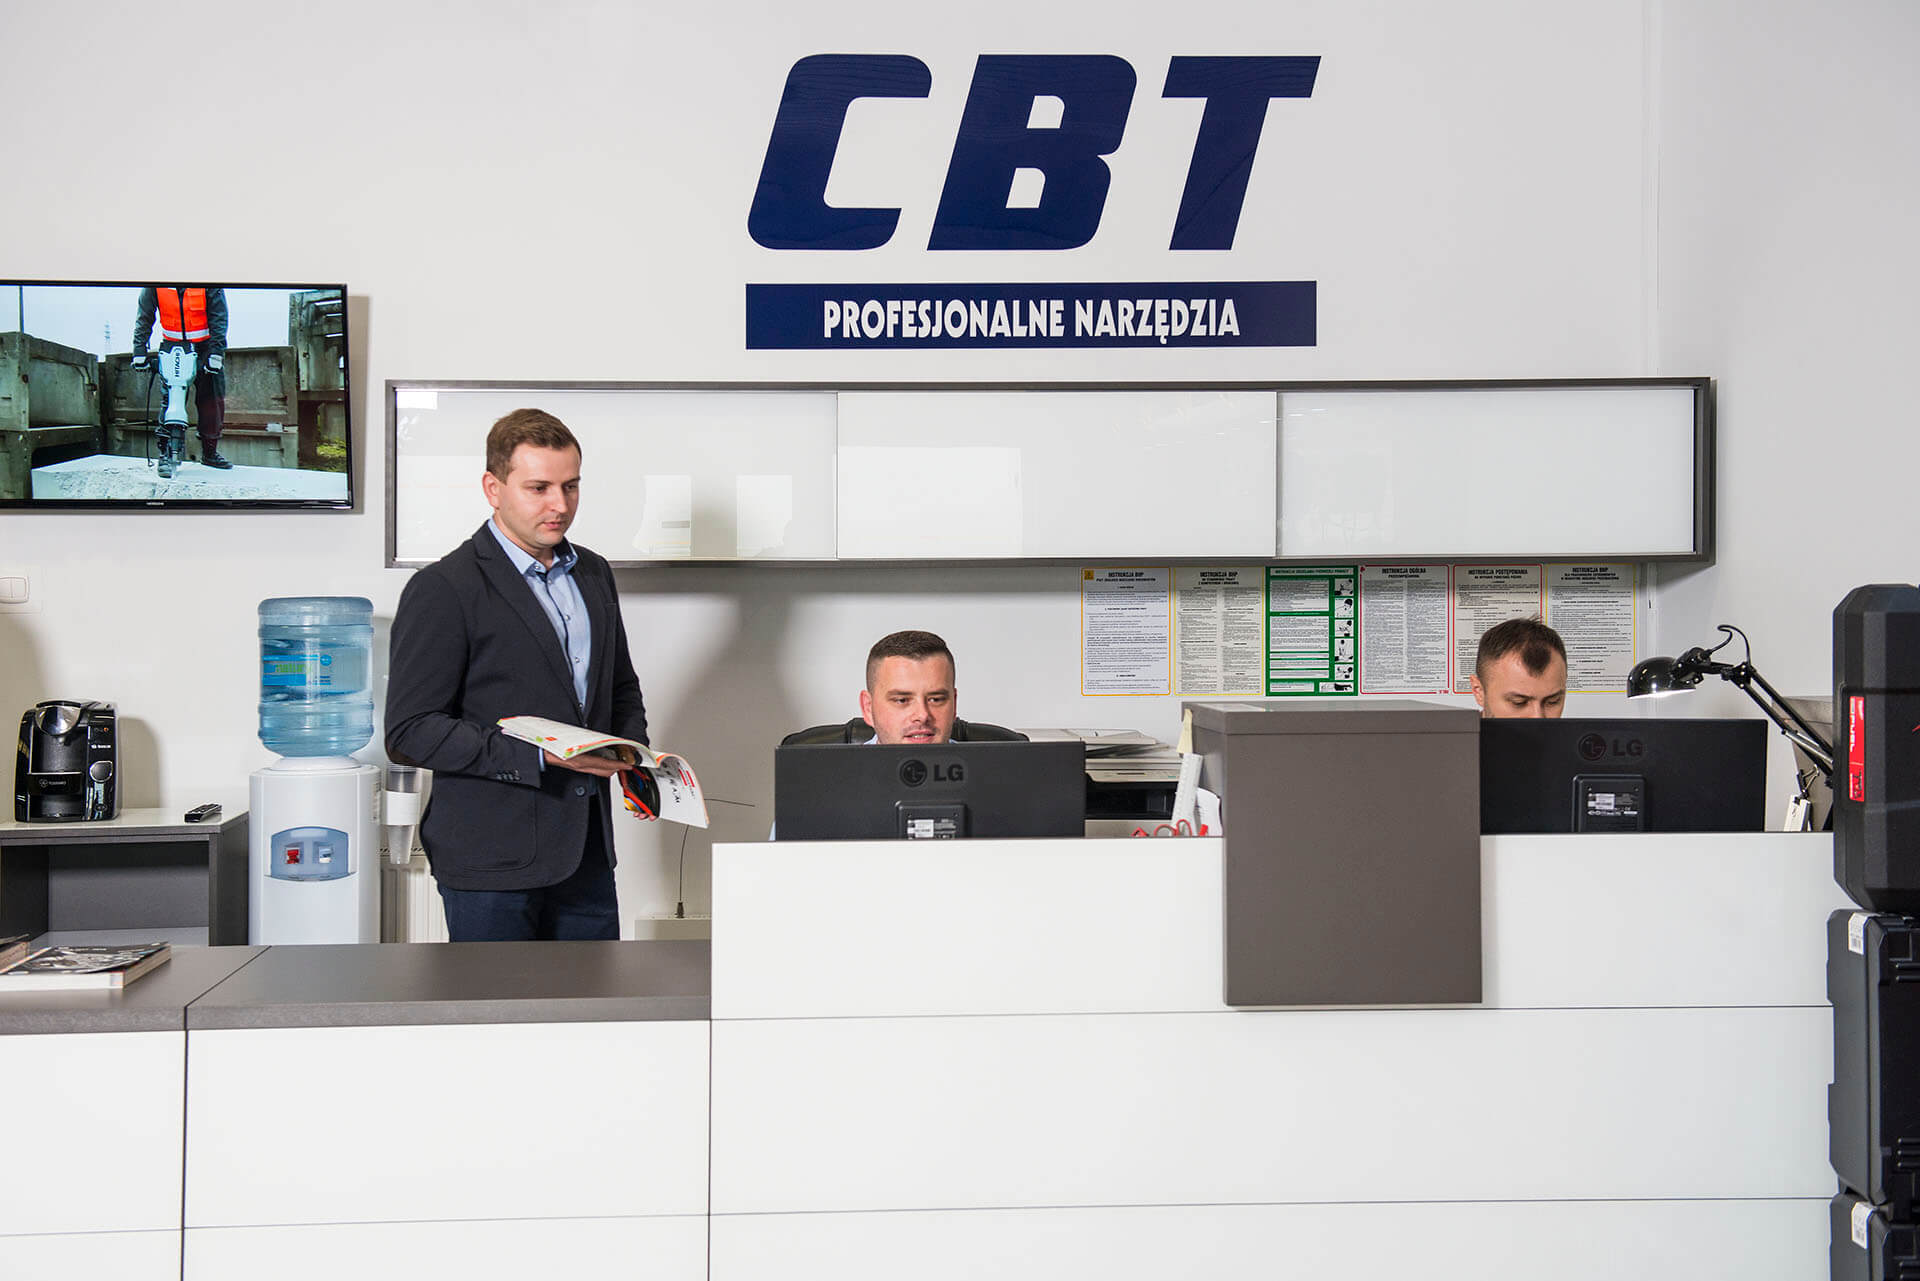 CBT Polska - Profesjonalne narzędzia